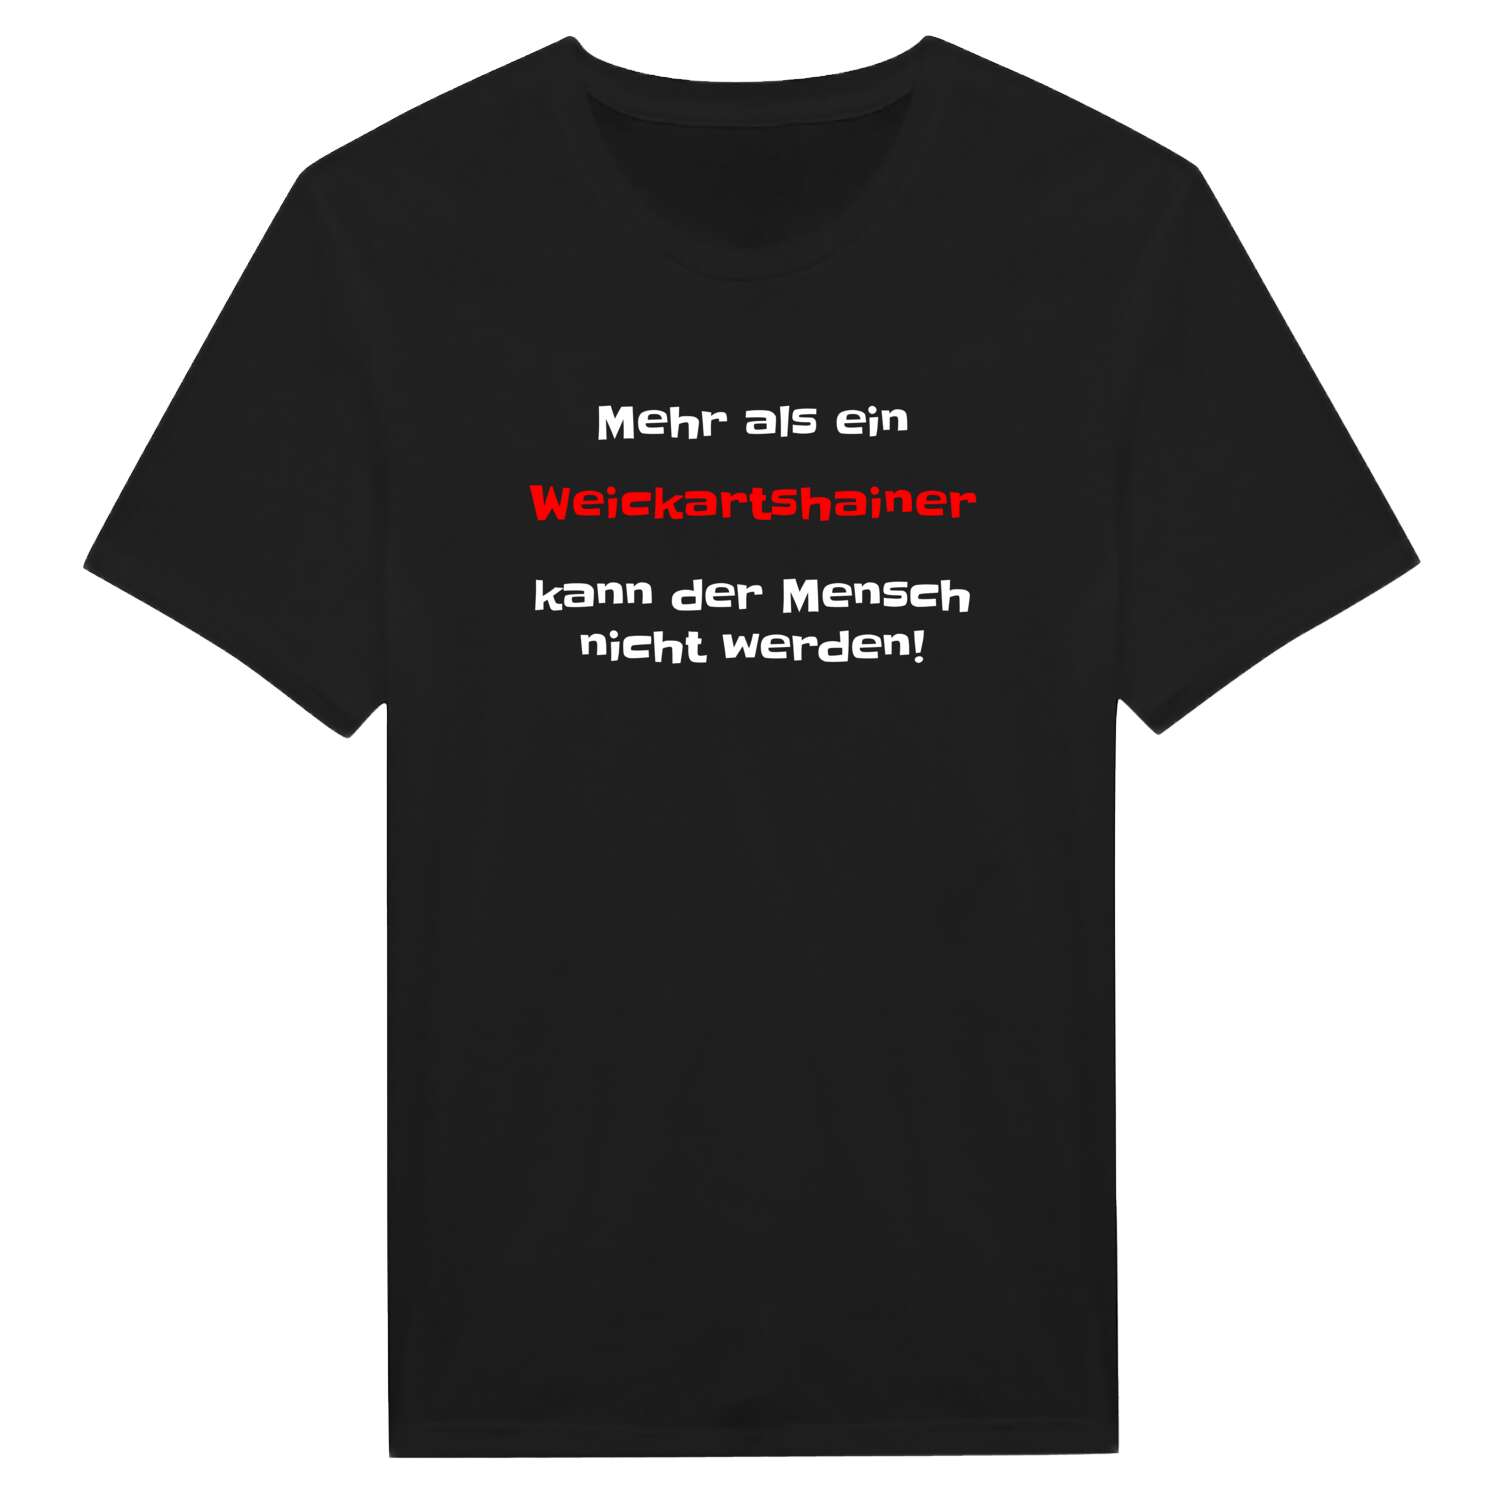 Weickartshain T-Shirt »Mehr als ein«